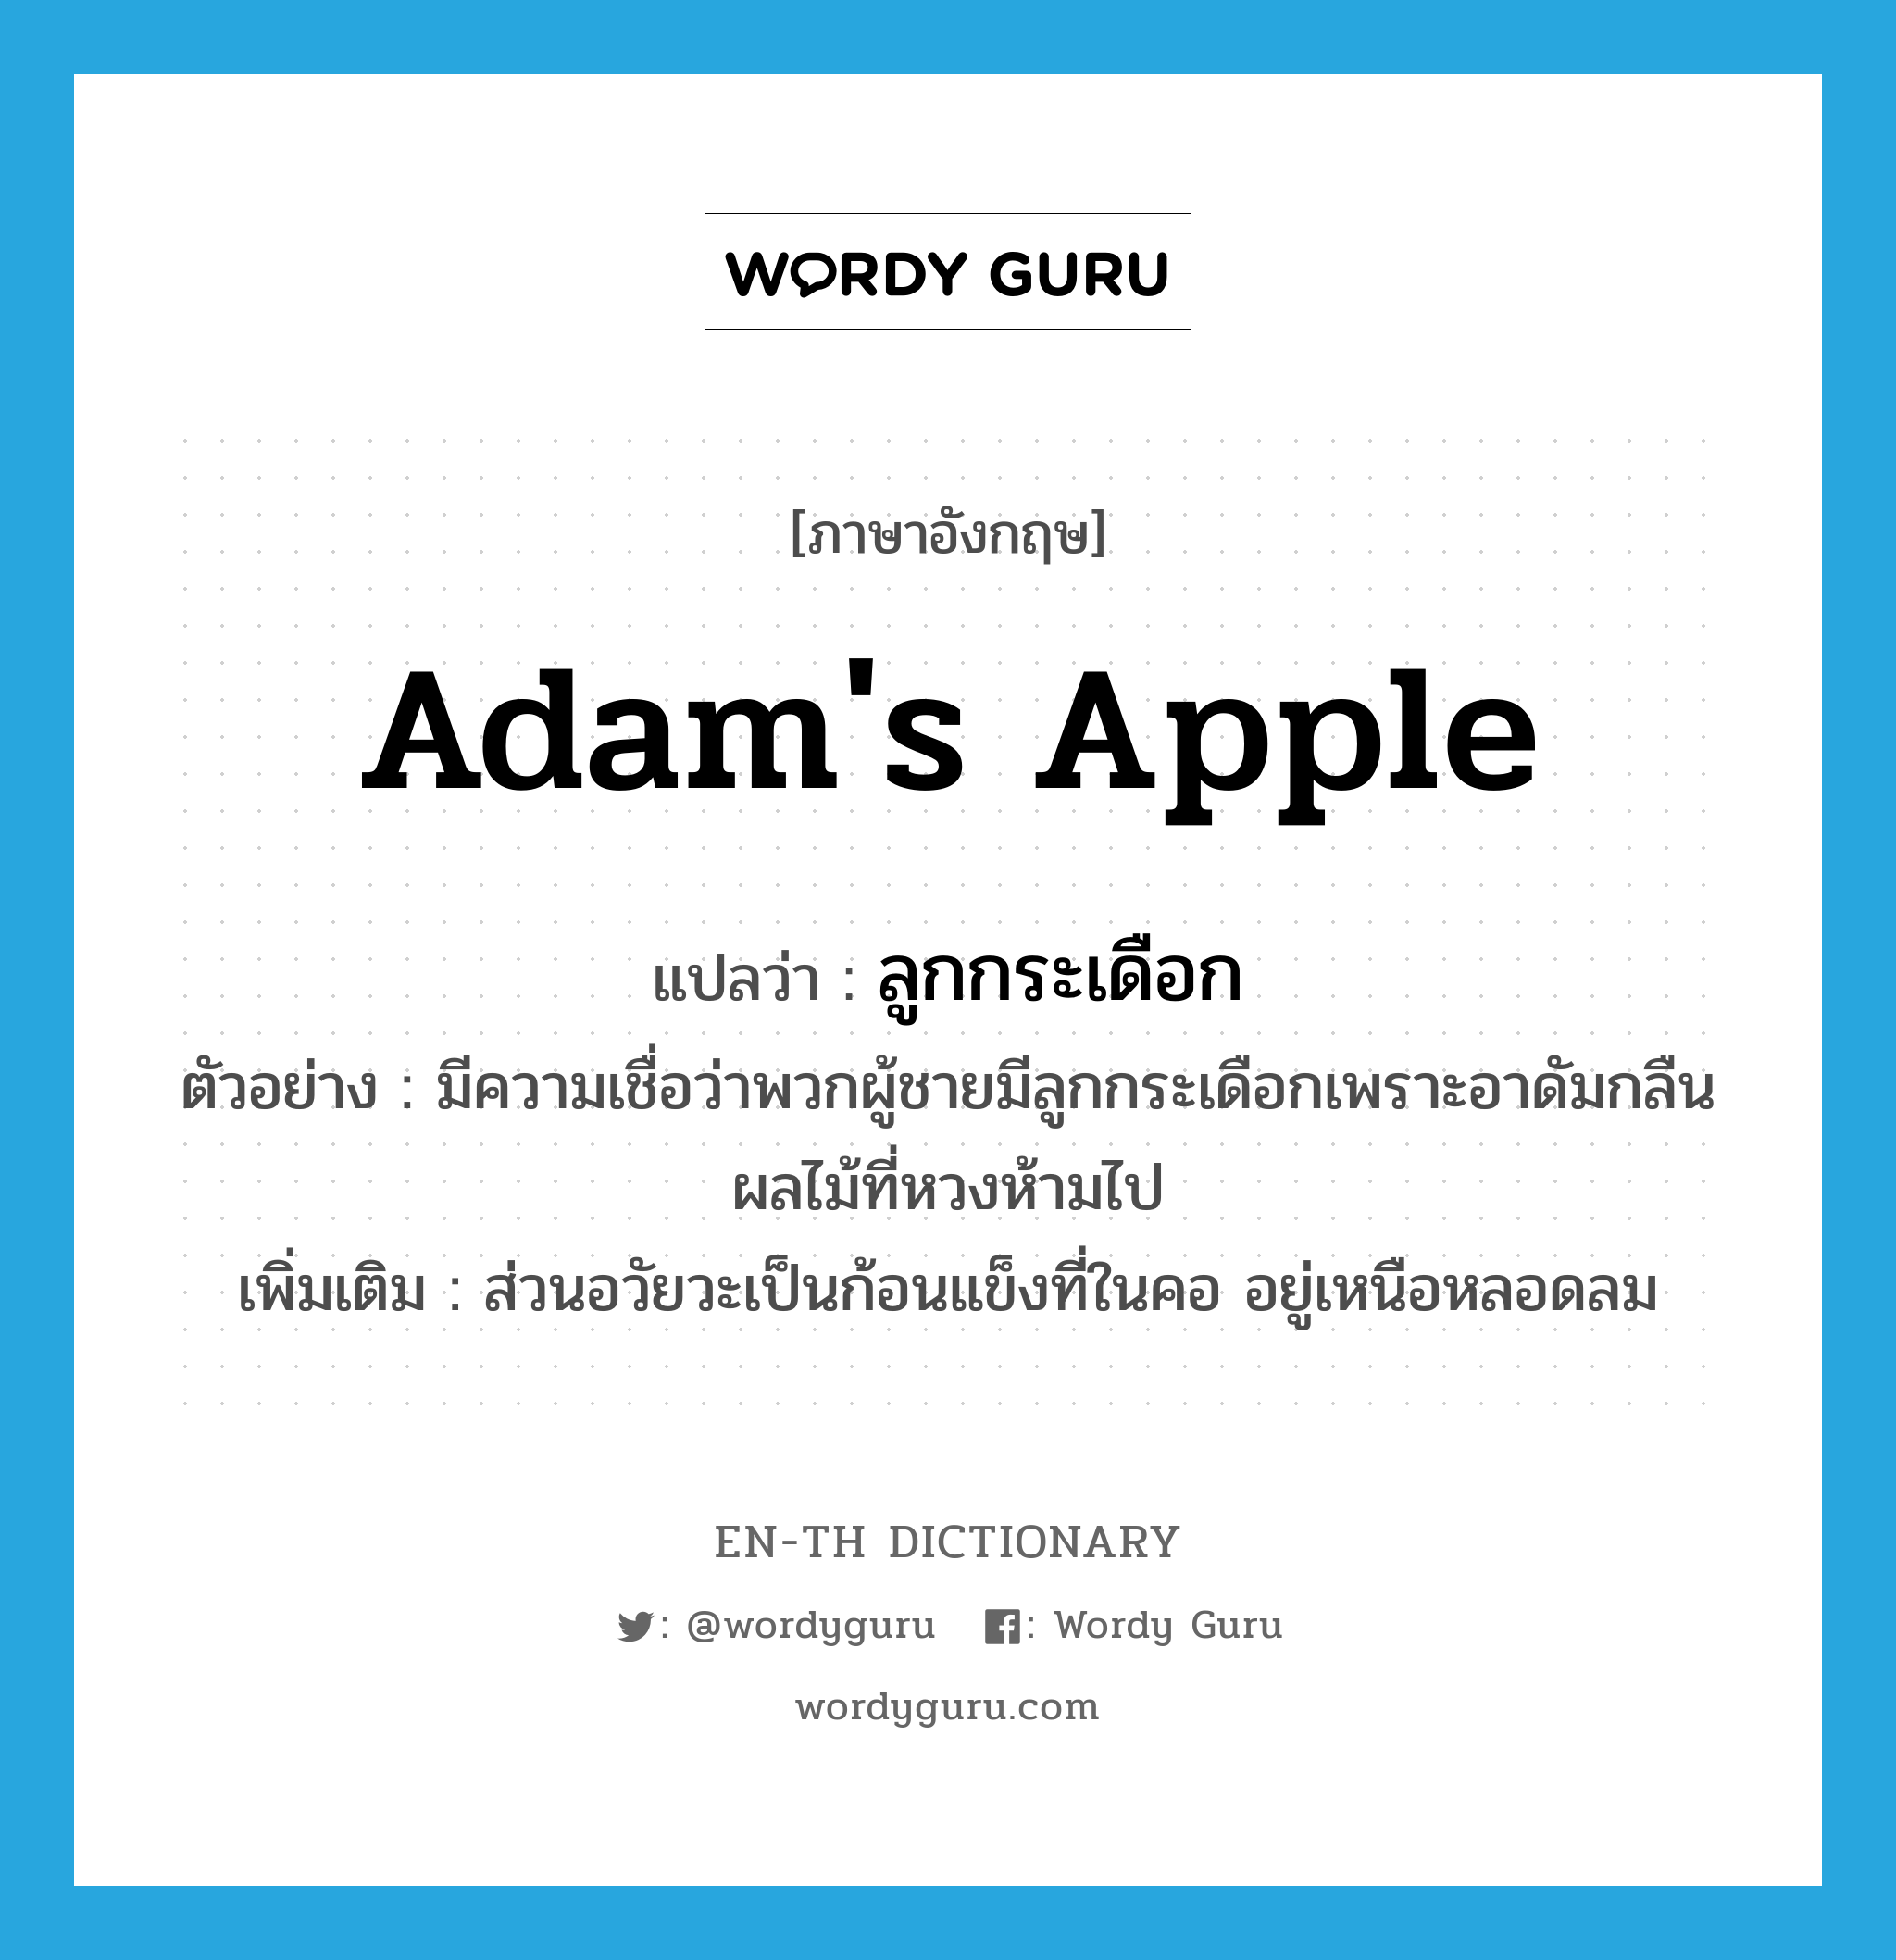 ลูกกระเดือก ภาษาอังกฤษ?, คำศัพท์ภาษาอังกฤษ ลูกกระเดือก แปลว่า Adam's apple ประเภท N ตัวอย่าง มีความเชื่อว่าพวกผู้ชายมีลูกกระเดือกเพราะอาดัมกลืนผลไม้ที่หวงห้ามไป เพิ่มเติม ส่วนอวัยวะเป็นก้อนแข็งที่ในคอ อยู่เหนือหลอดลม หมวด N